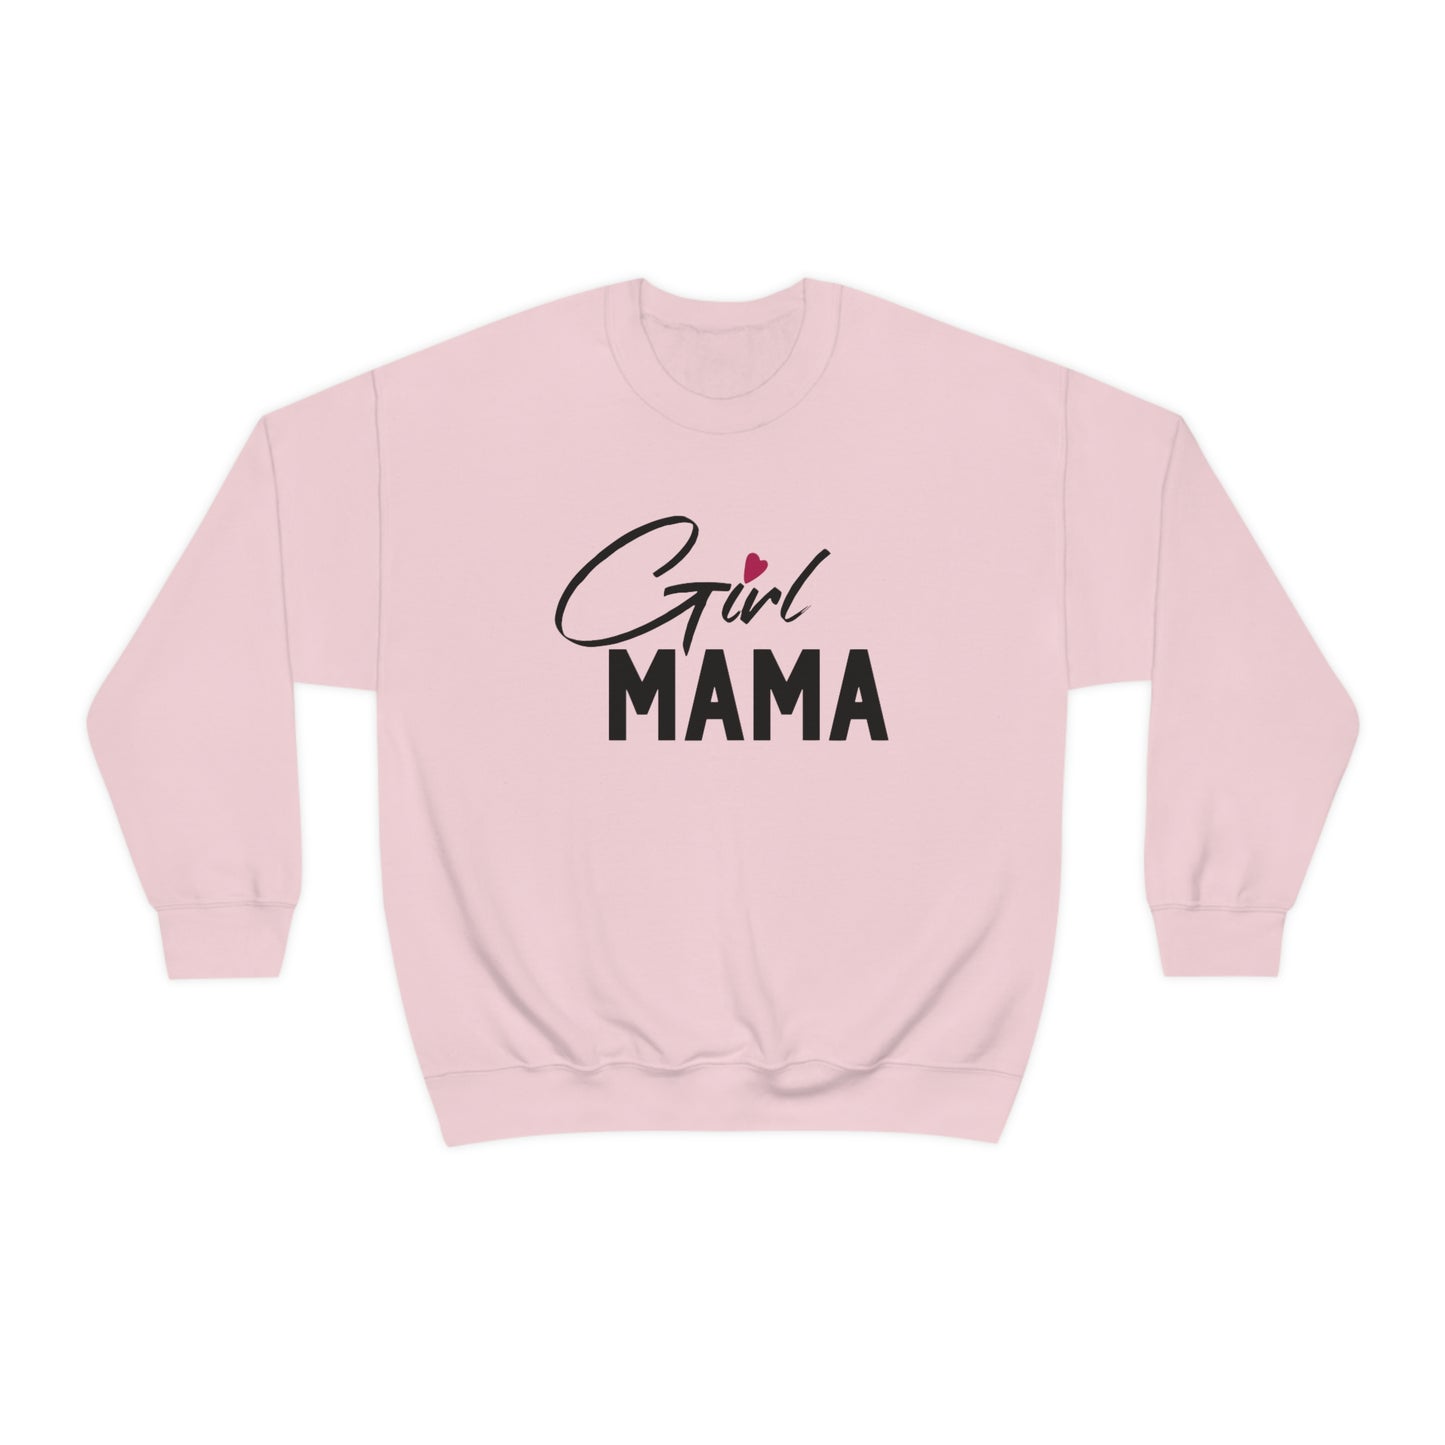 GIRL MAMA Sweater